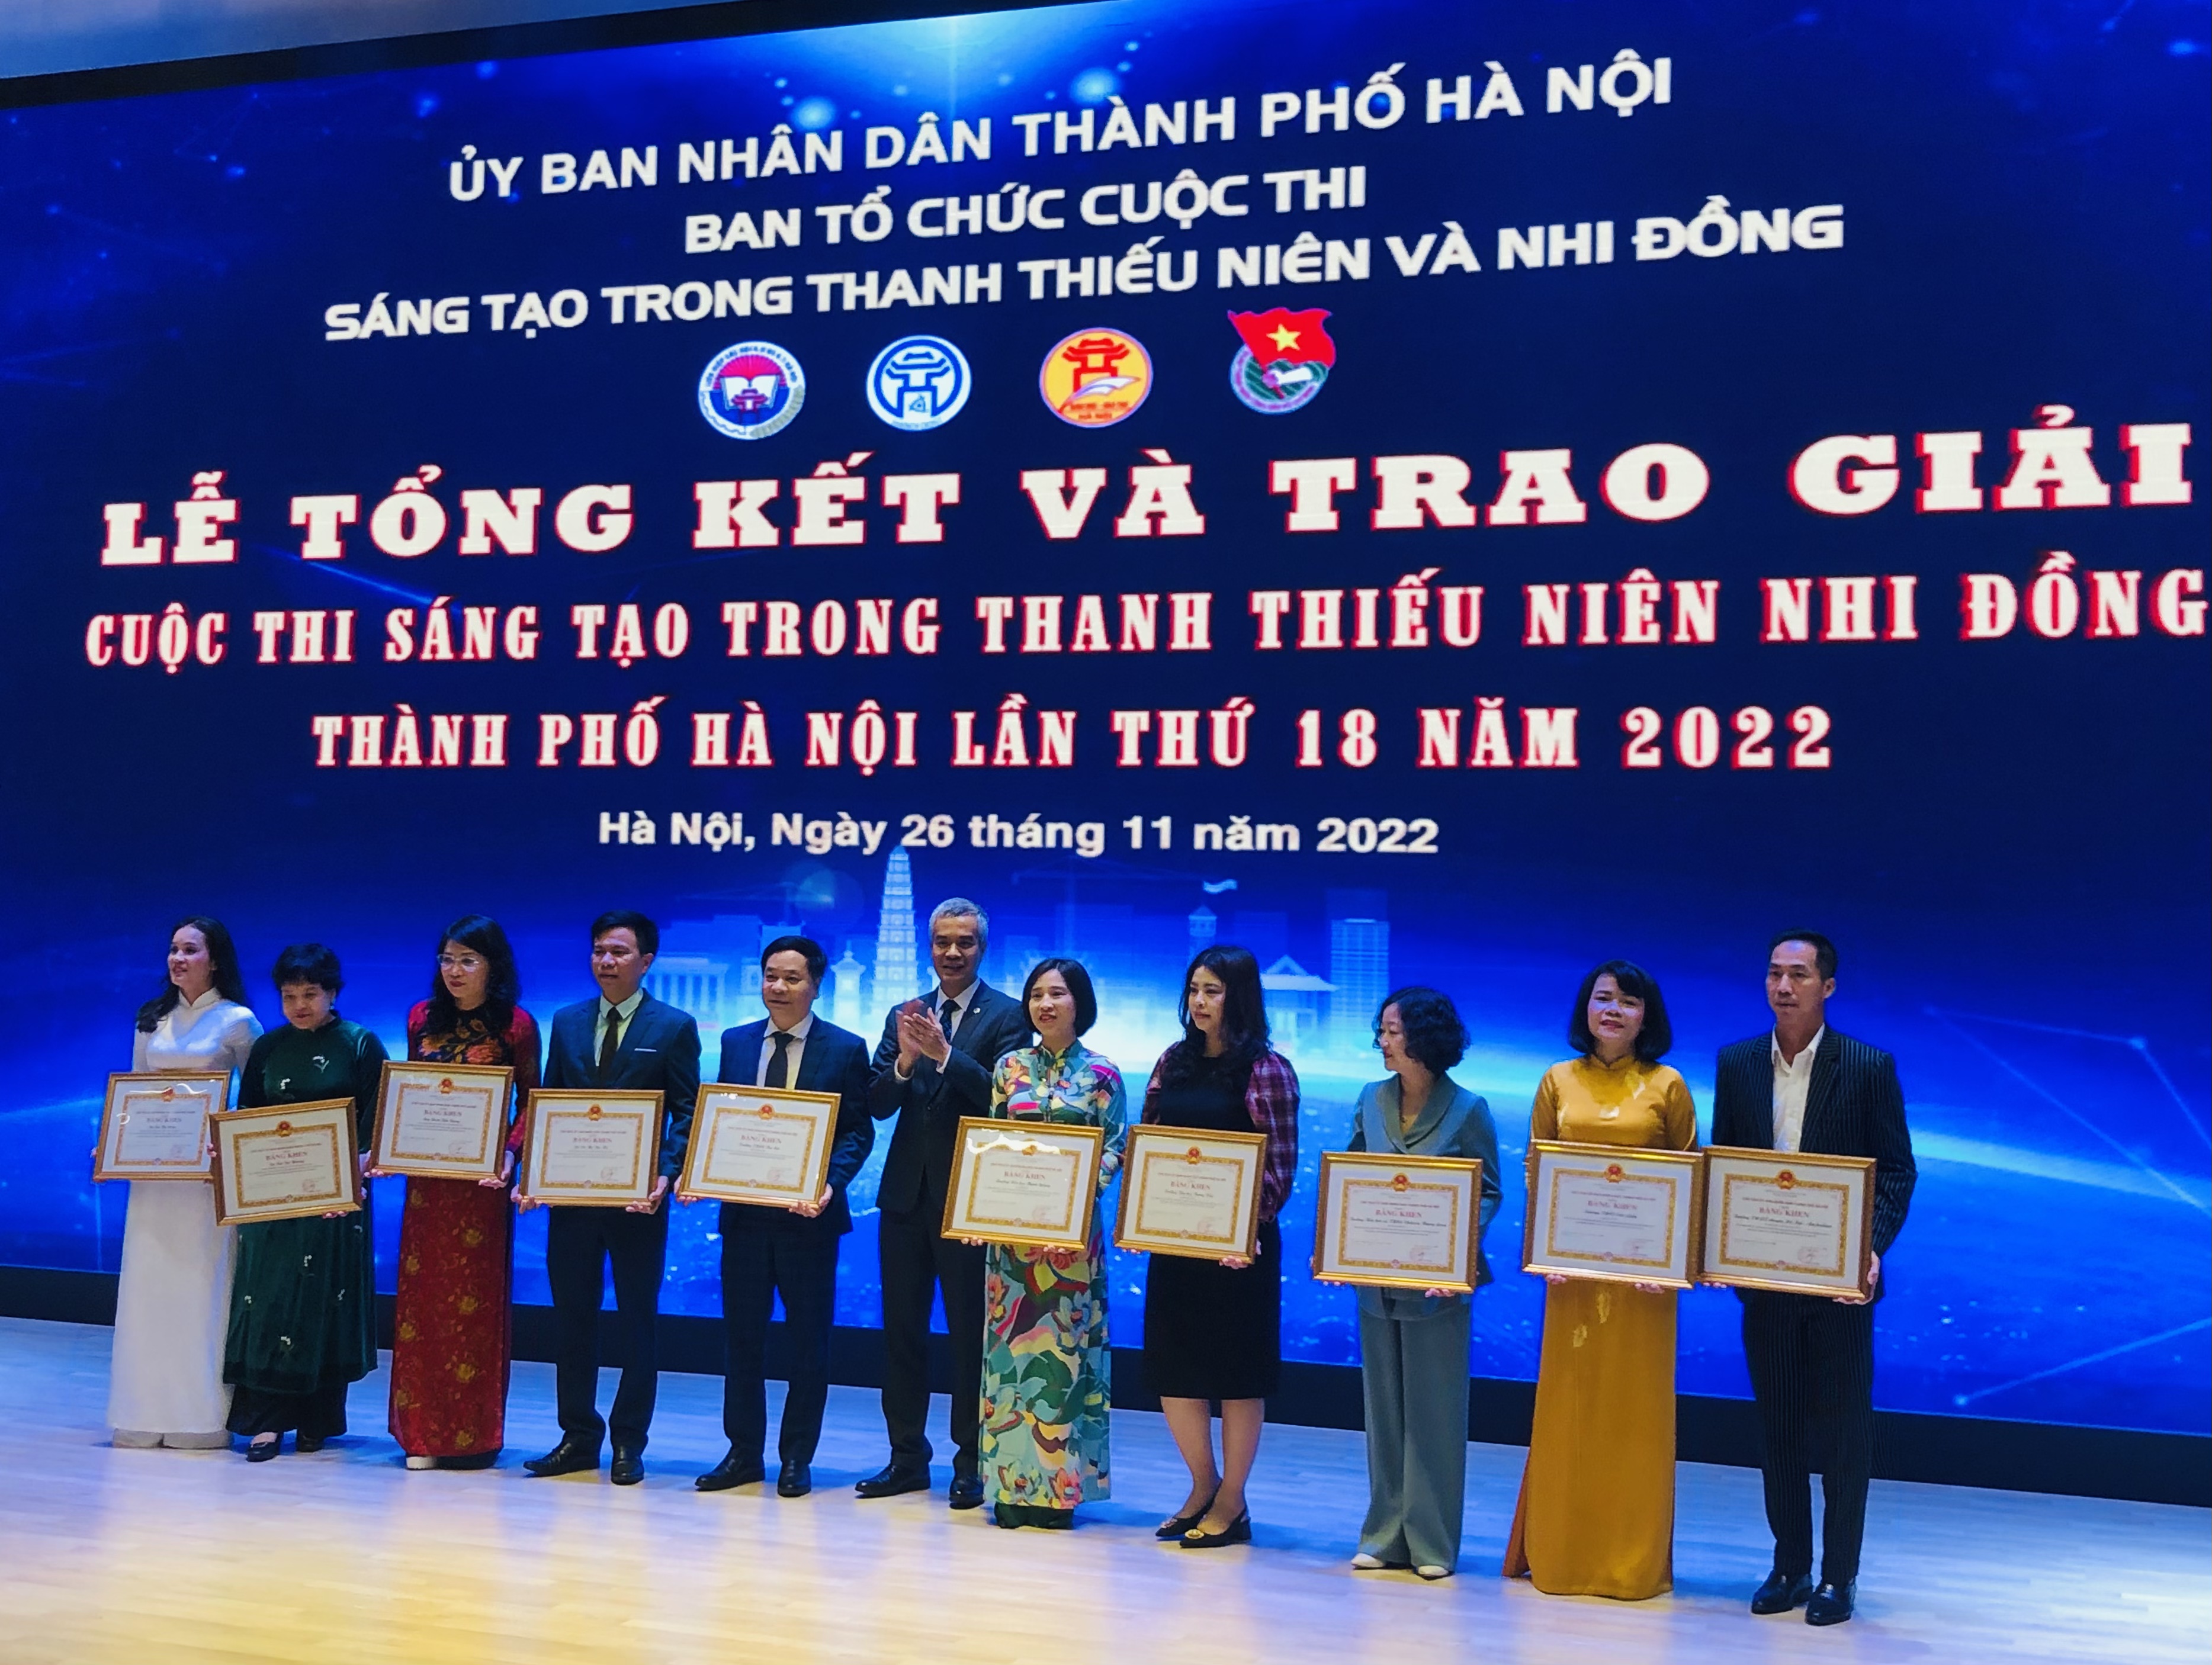 Nhân dịp này, UBND TP Hà Nội đã tặng Bằng khen cho 10 đơn vị có thành tích xuất sắc